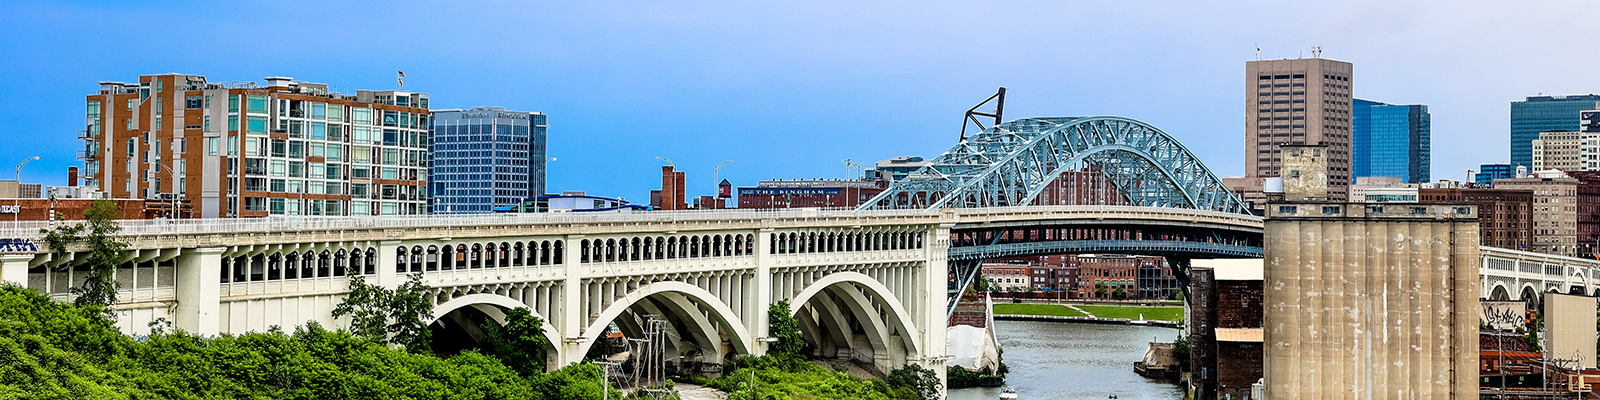 Veterans Memorial Bridge and Cuyahoga River